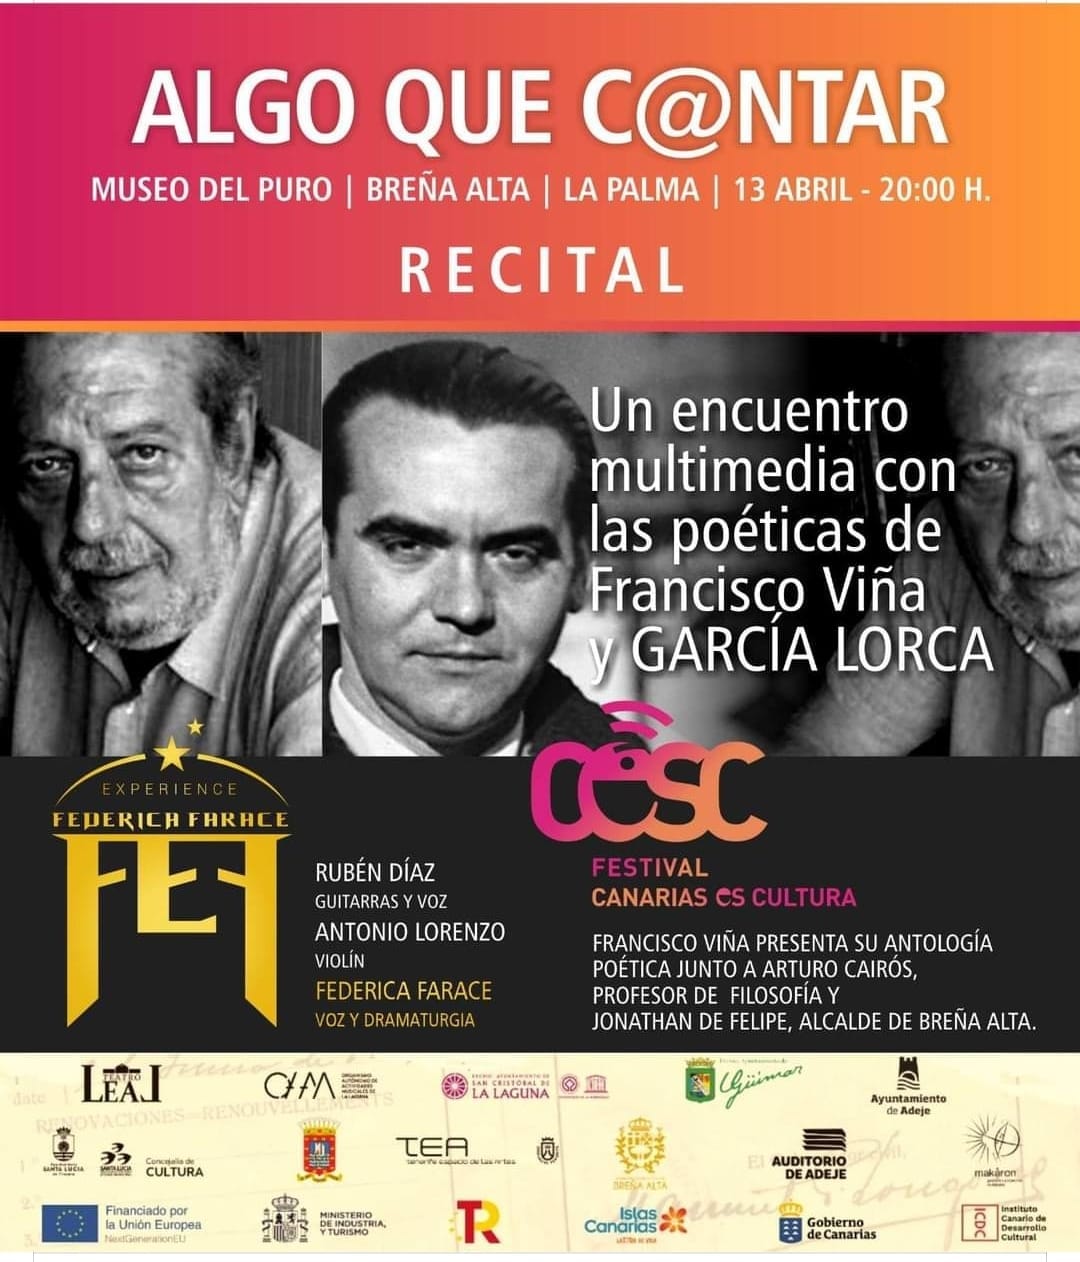 El "Festival Canarias es Cultura" llega a Breña Alta